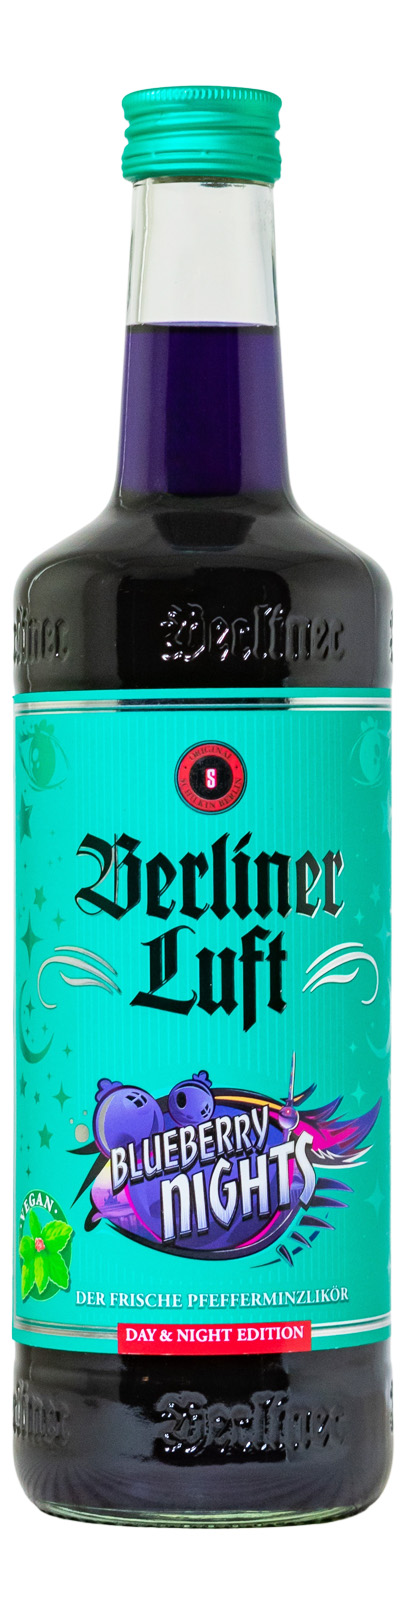 Berliner Luft - Schilkin GmbH - 0.7l